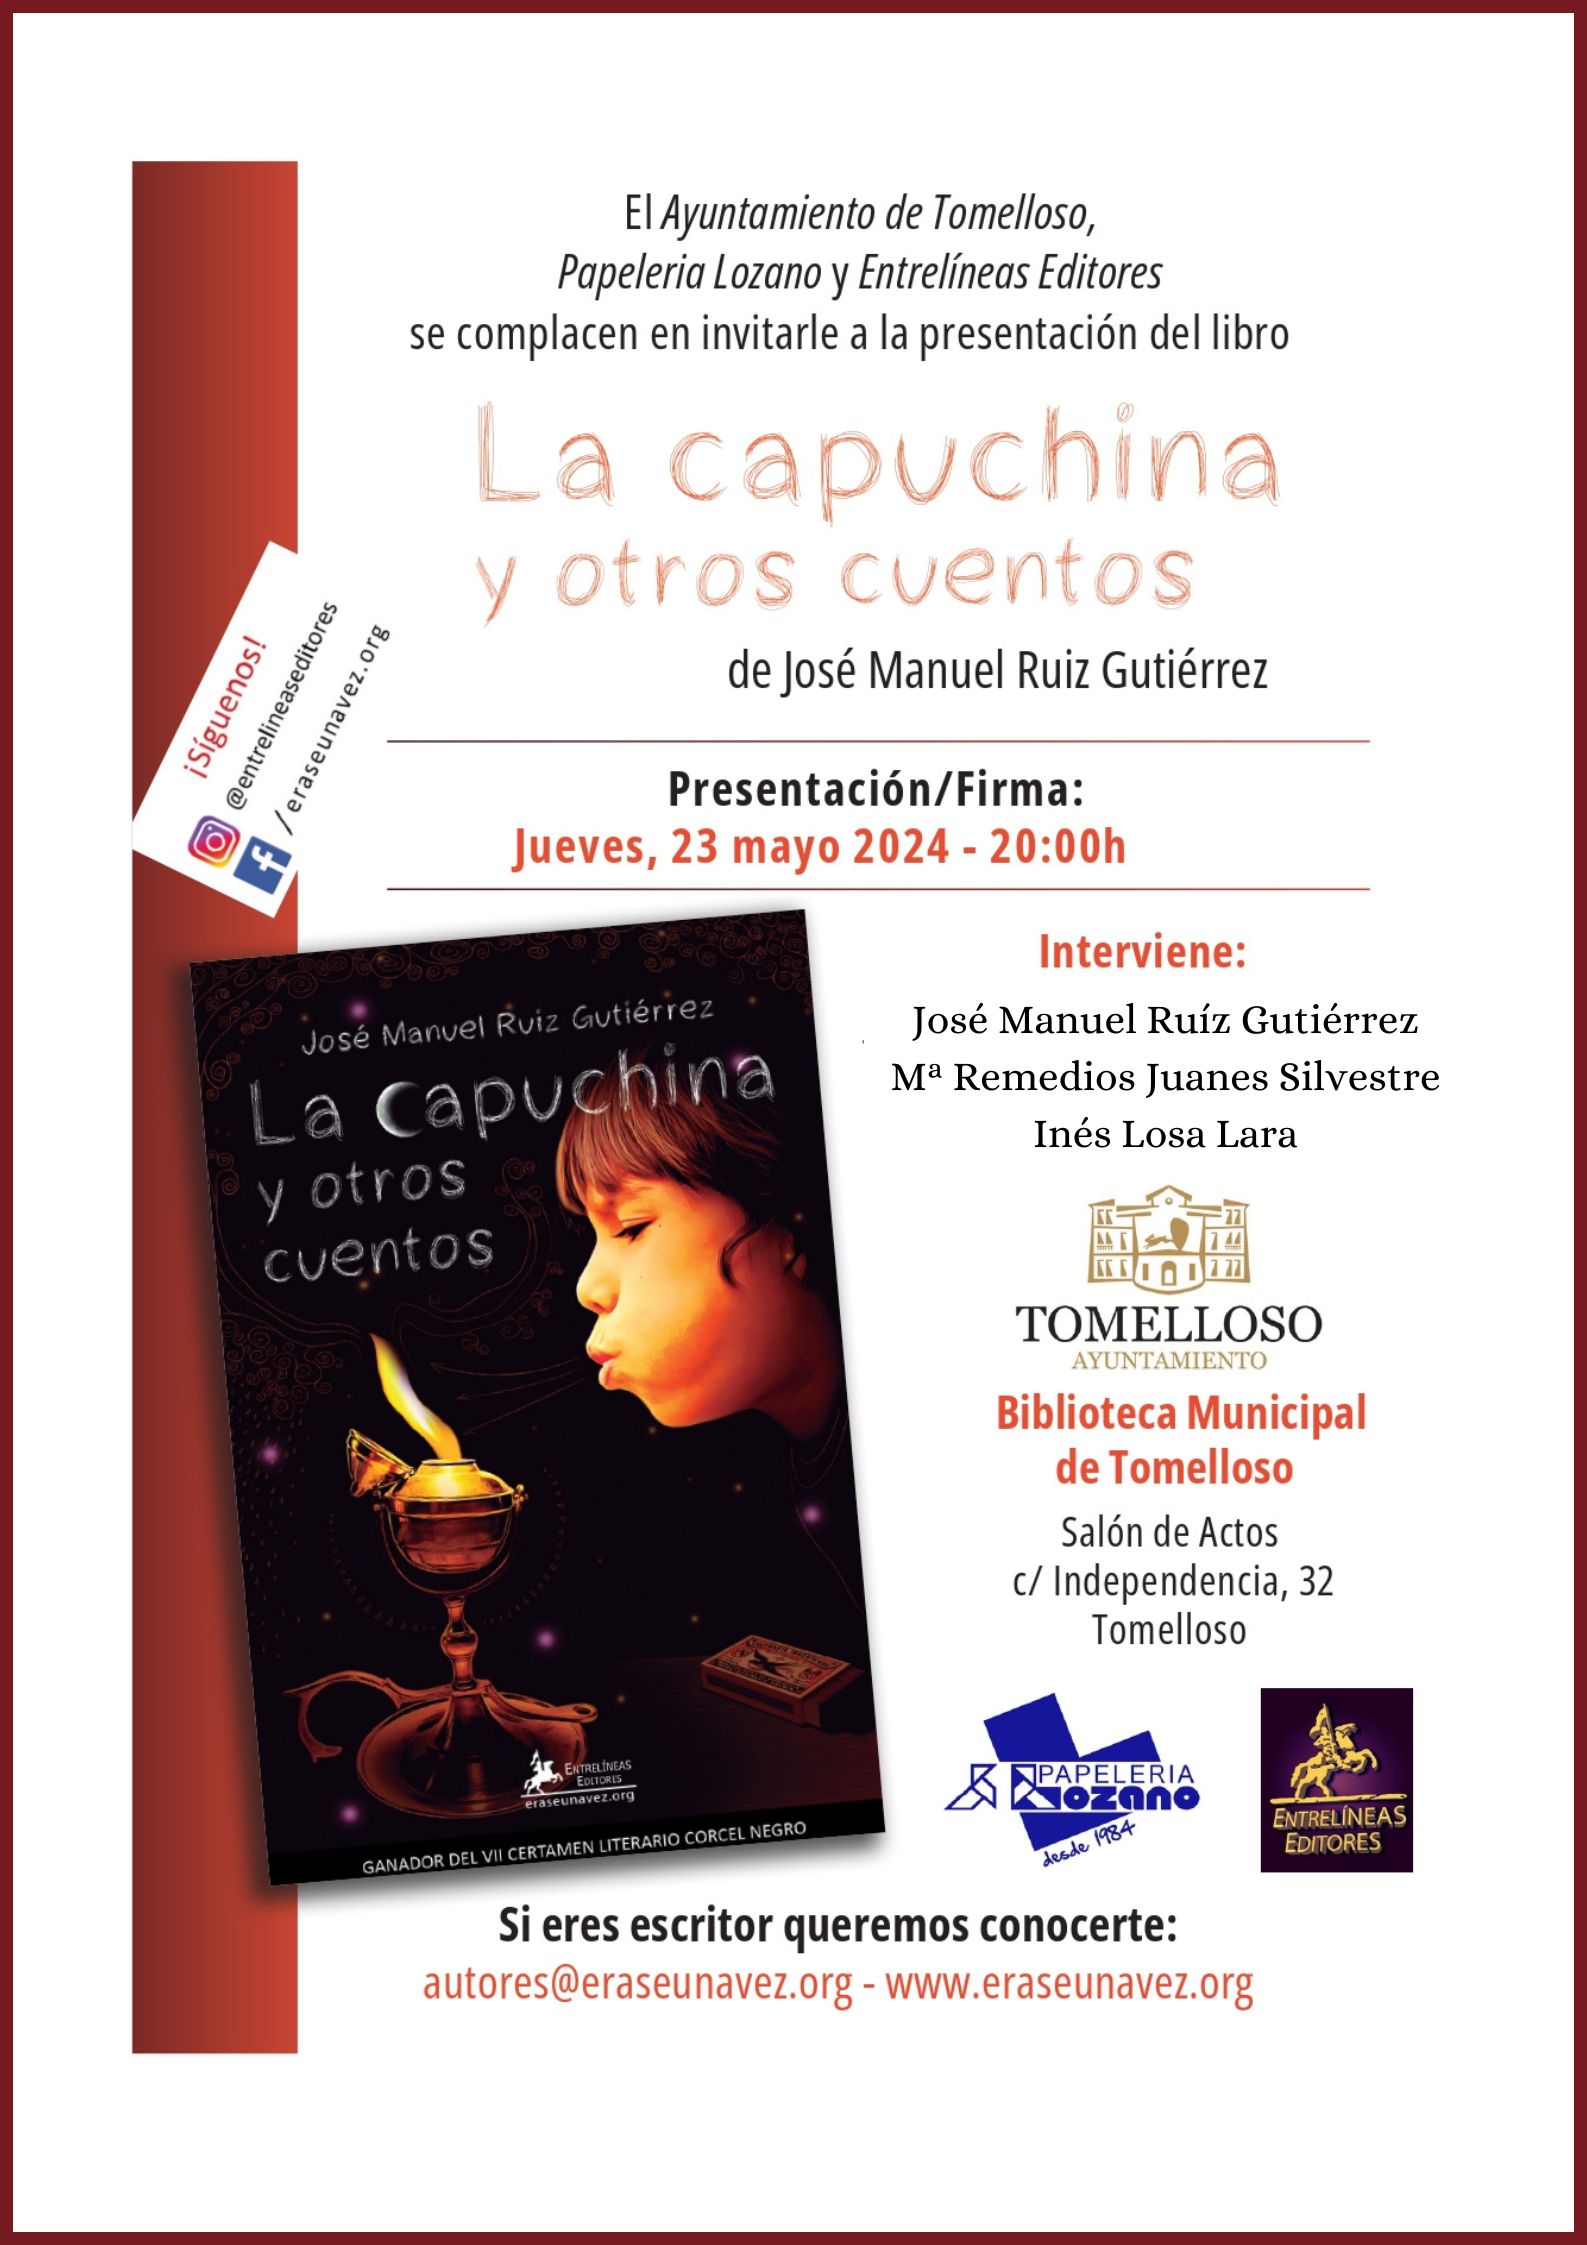 El 23 de mayo se presenta en Tomelloso “La Capuchina y otros cuentos”, de José Manuel Ruiz Gutiérrez